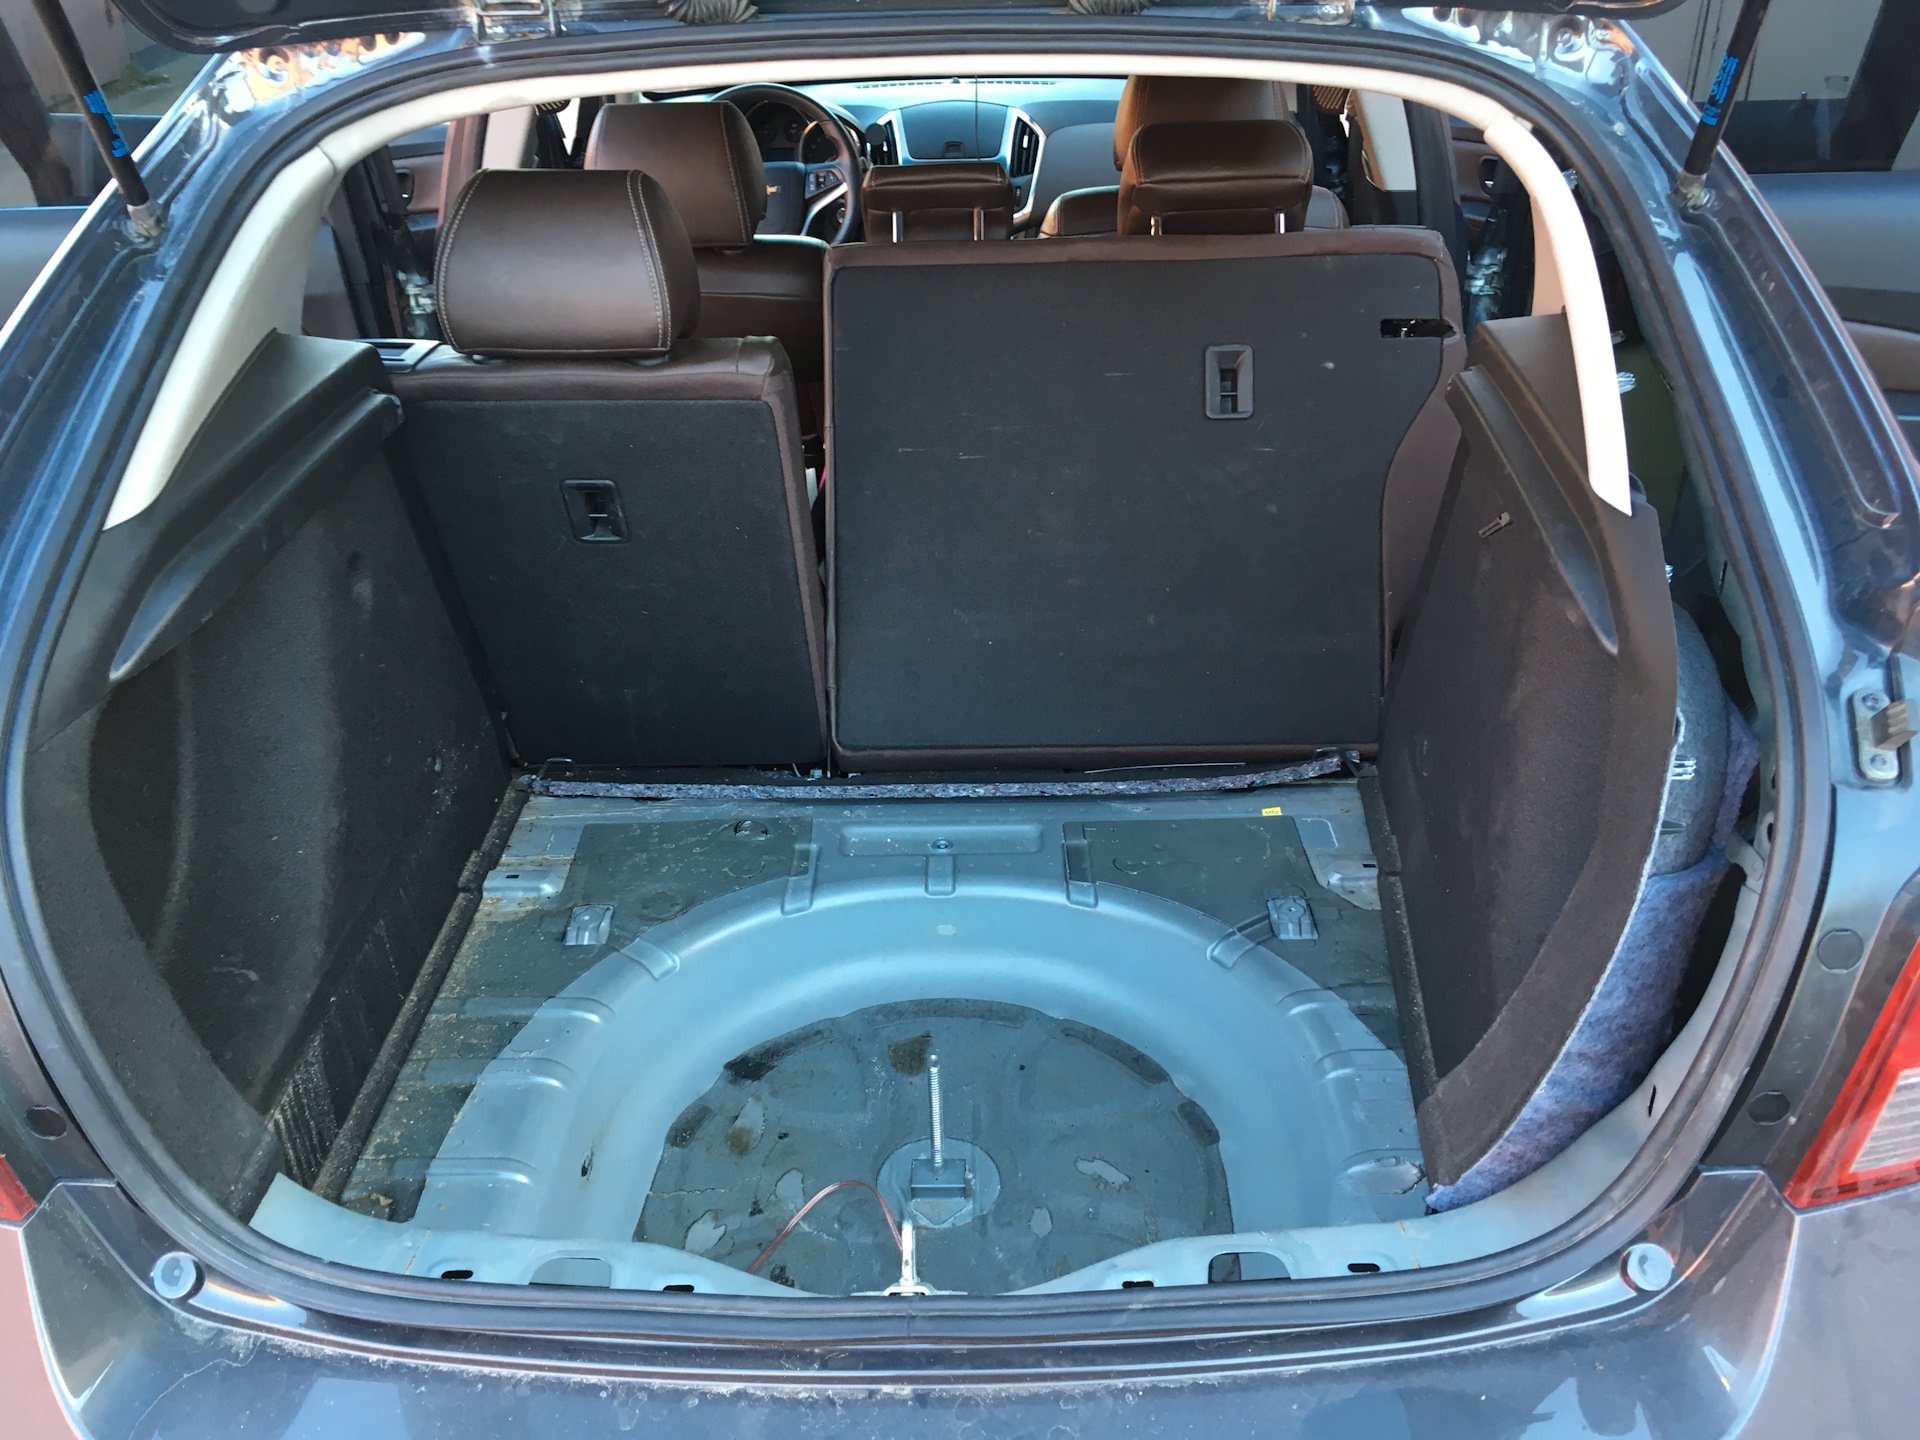 Chevrolet Cruze 2013 седан багажник